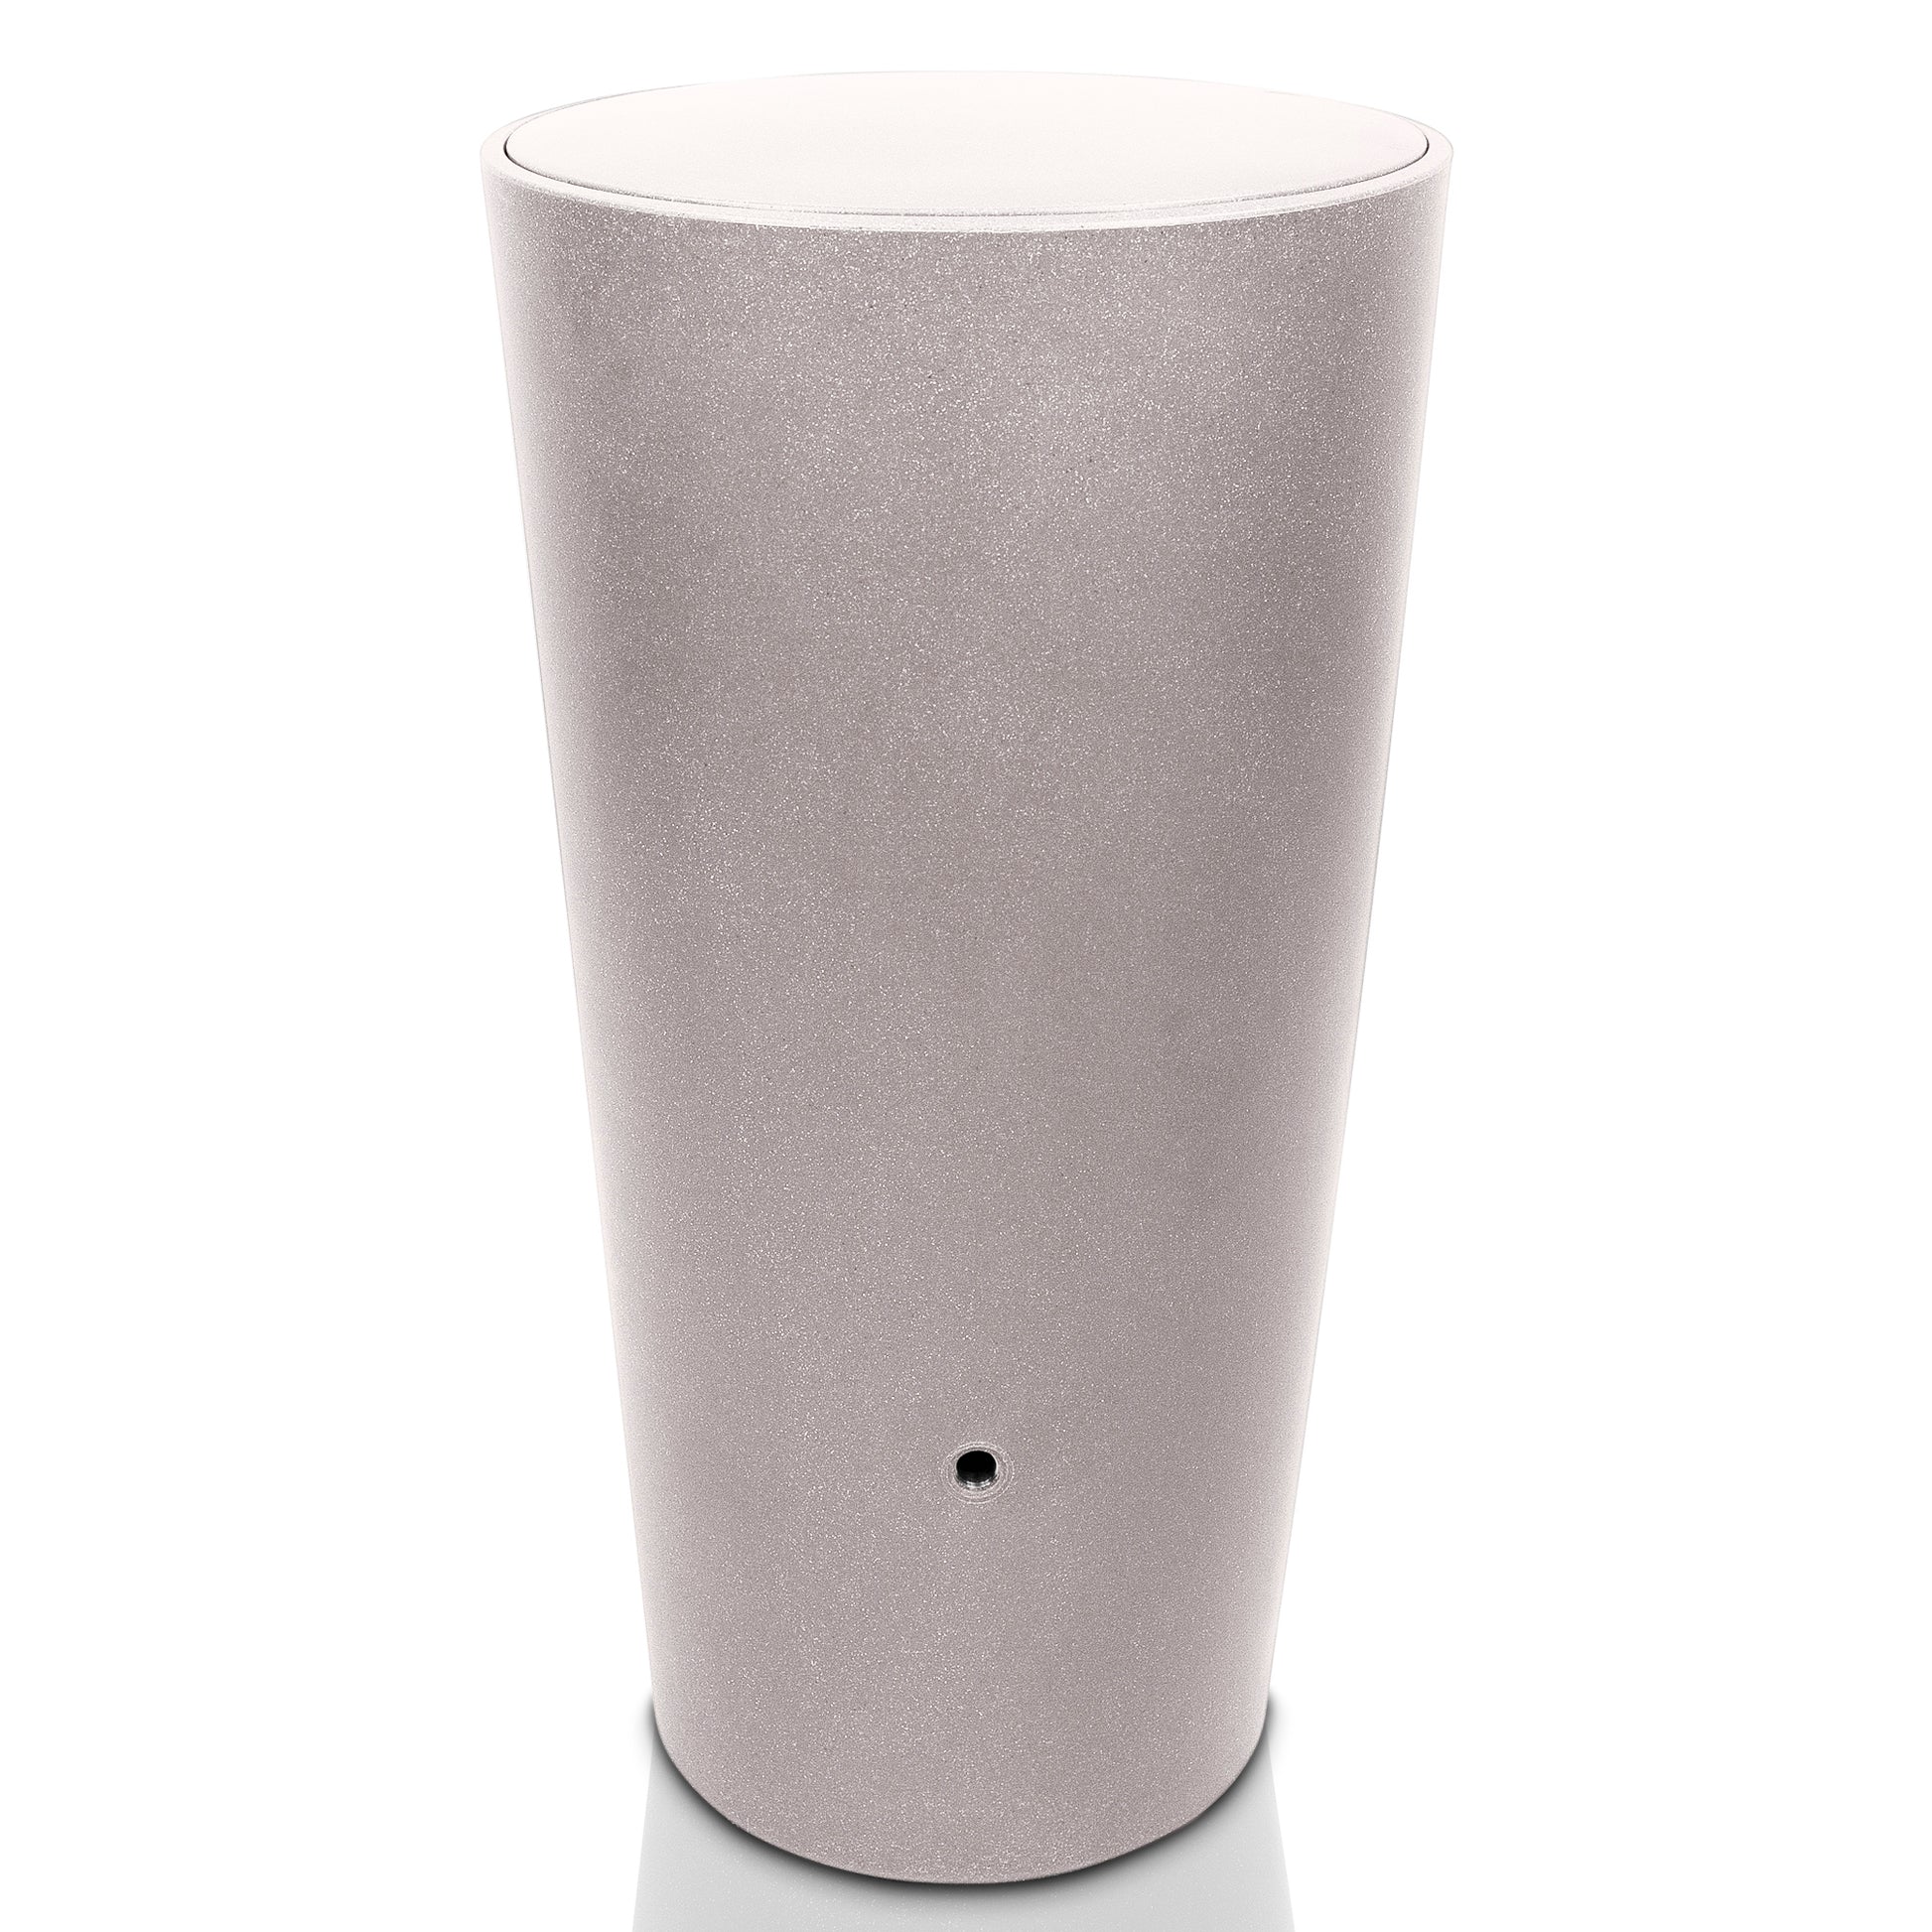 Zylindrische silberne Vase mit glatter Oberfläche und sicherem Deckel auf weißem Hintergrund.
YourCasa Regentonne 210 Liter [Aquaform] - Frostsicher & Kinderfreundlich von yourcasa-de.